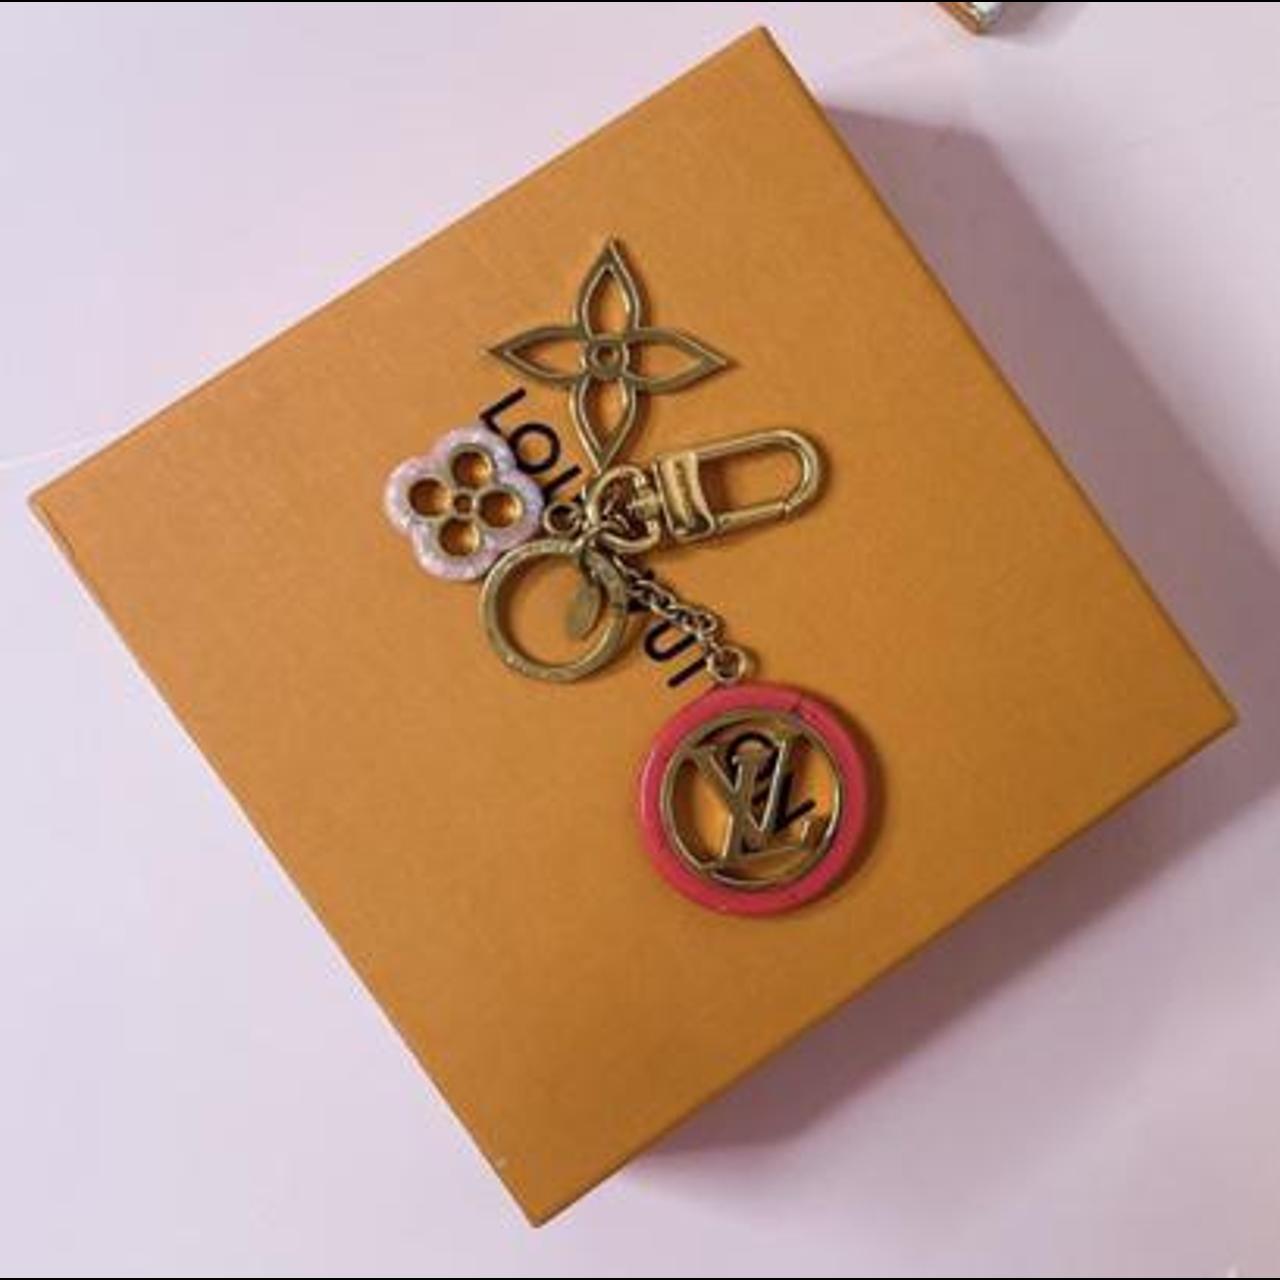 LOUIS VUITTON Louis Vuitton Portocre color line bag charm key ring M64525  pink